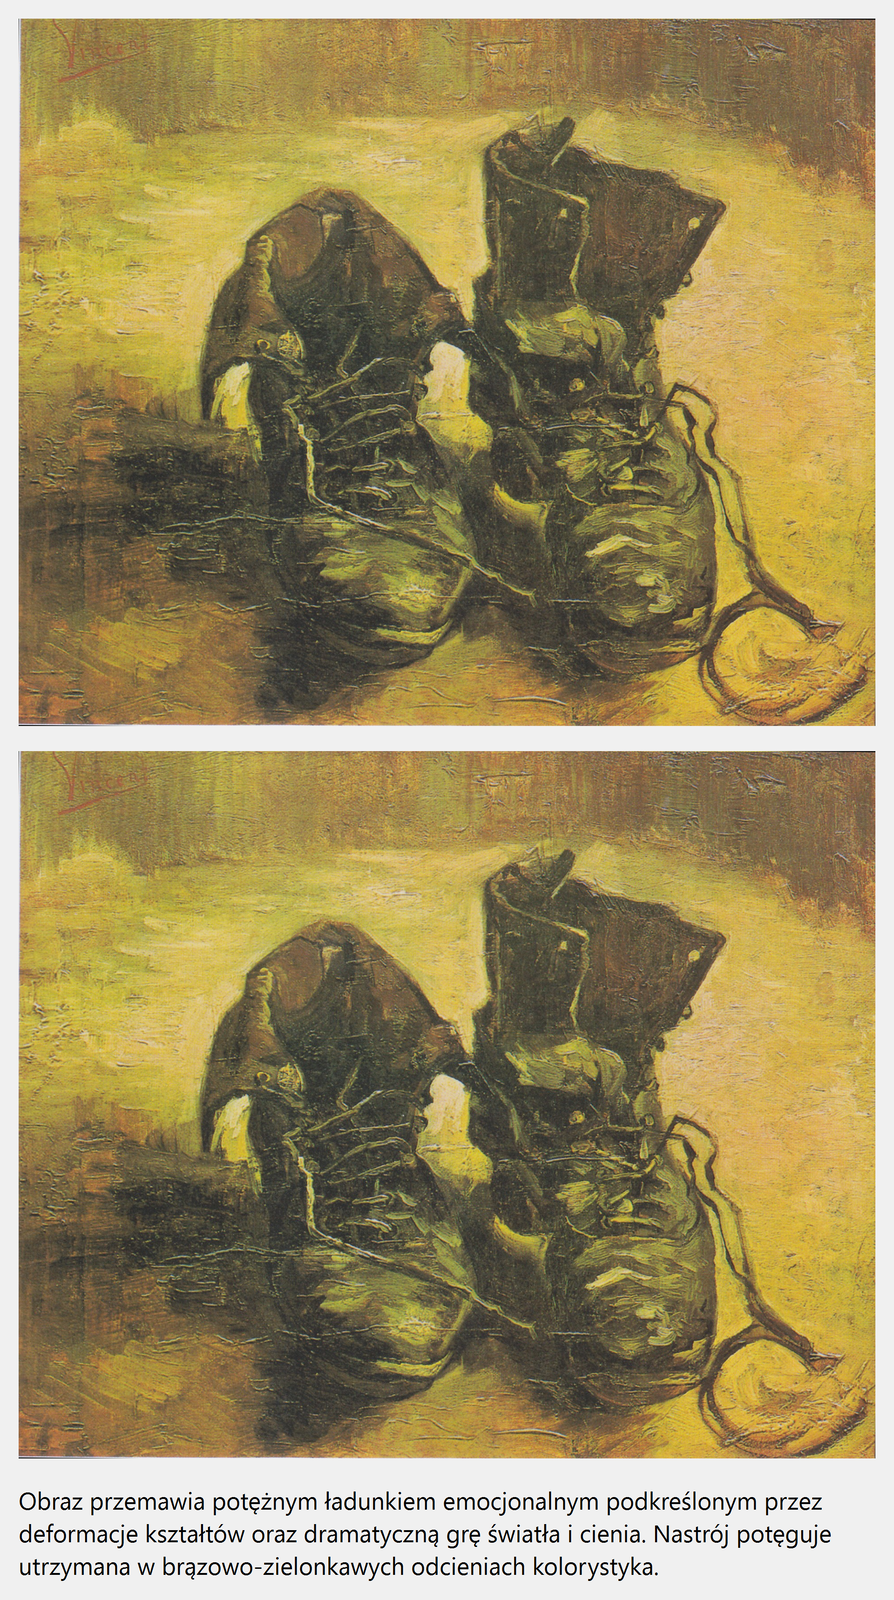 Ilustracja interaktywna o kształcie poziomego prostokąta przedstawia obraz Vincenta van Gogha „Para butów”. Ukazuje starą i zdartą parę butów na żółtym tle. Sznurowadła są luźne, a cholewka lewego buta wywrócona. Dodatkowo na ilustracji została zamieszczona informacja: Obraz przemawia potężnym ładunkiem emocjonalnym podkreślonym przez deformację kształtów oraz dramatyczną grę światła i cienia. Nastrój potęguje utrzymana w brązowo-zielonkawych odcieniach kolorystyka.